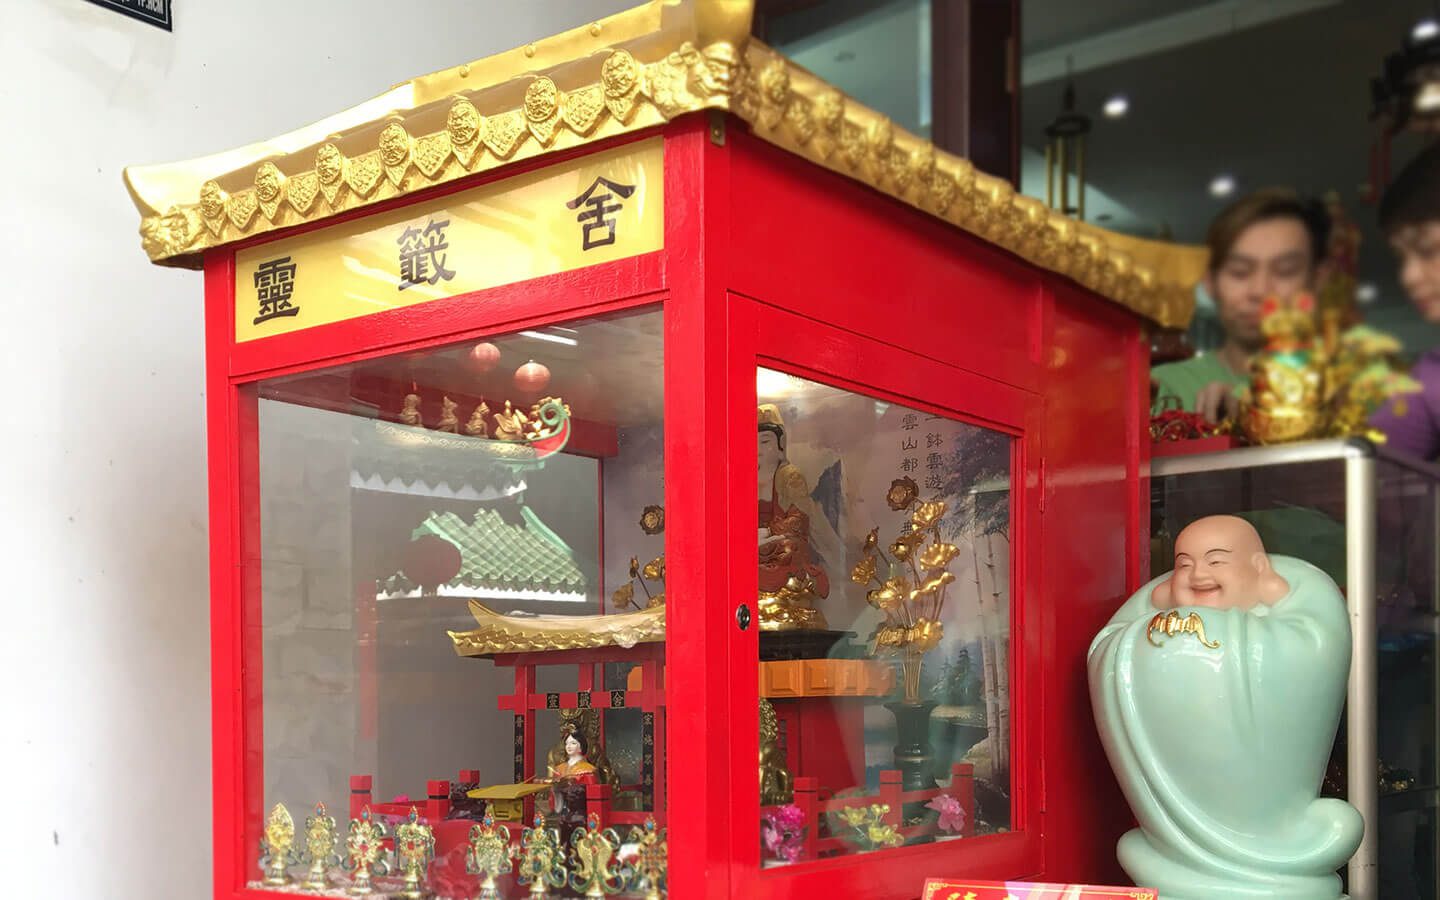 Chùa Vạn Phật quận 5 khám phá văn hóa xin xăm đến từ Trung Hoa